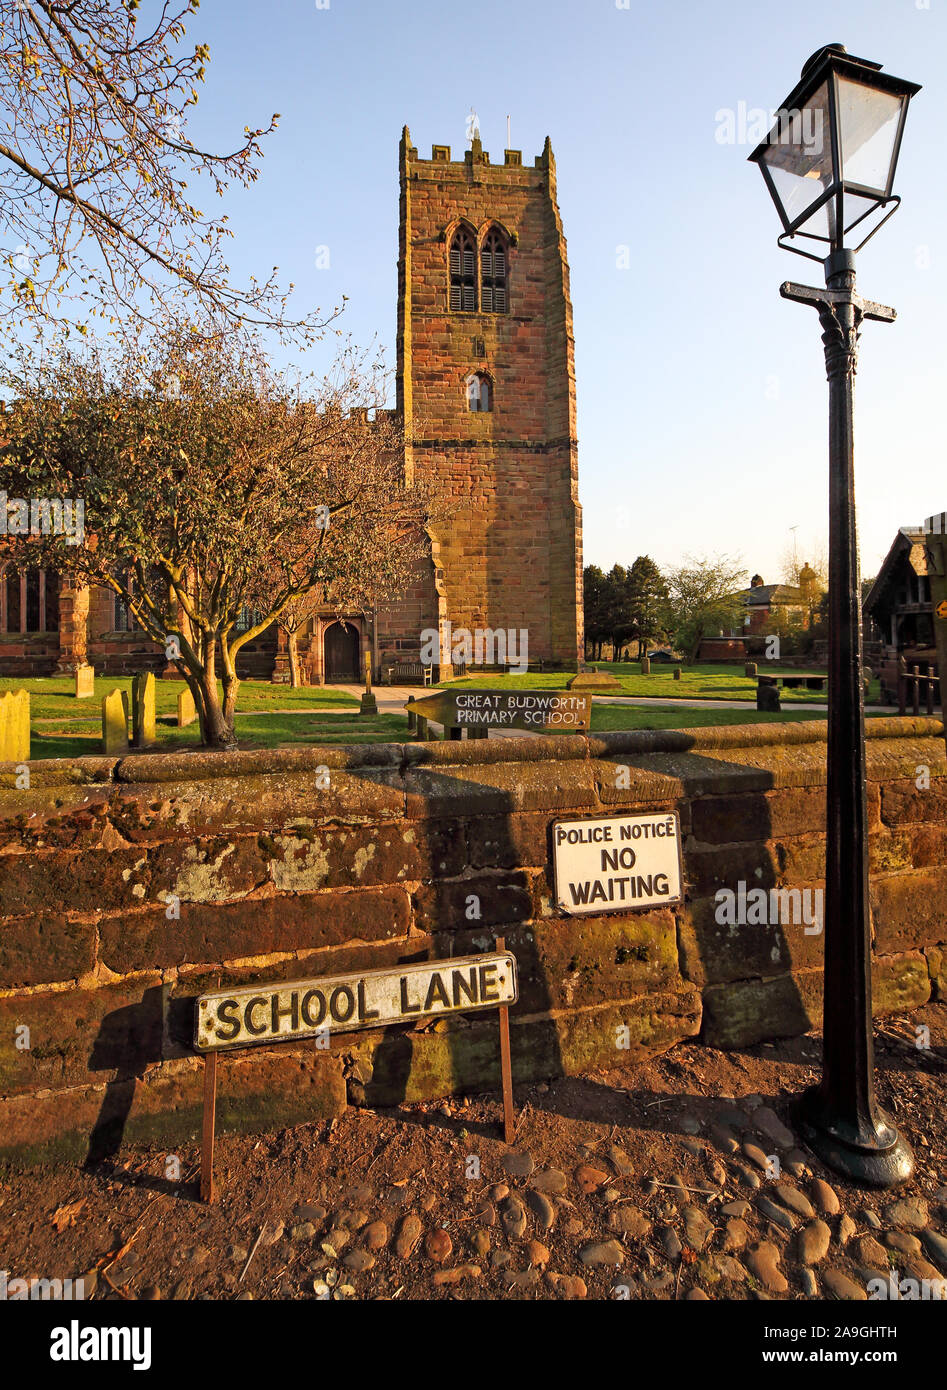 School Lane, Gran Budworth, Vista de Santa María y la Iglesia de Todos Los Santos, High St, Gran Budworth, Northwich, Cheshire, Inglaterra, CW9 6HF Foto de stock